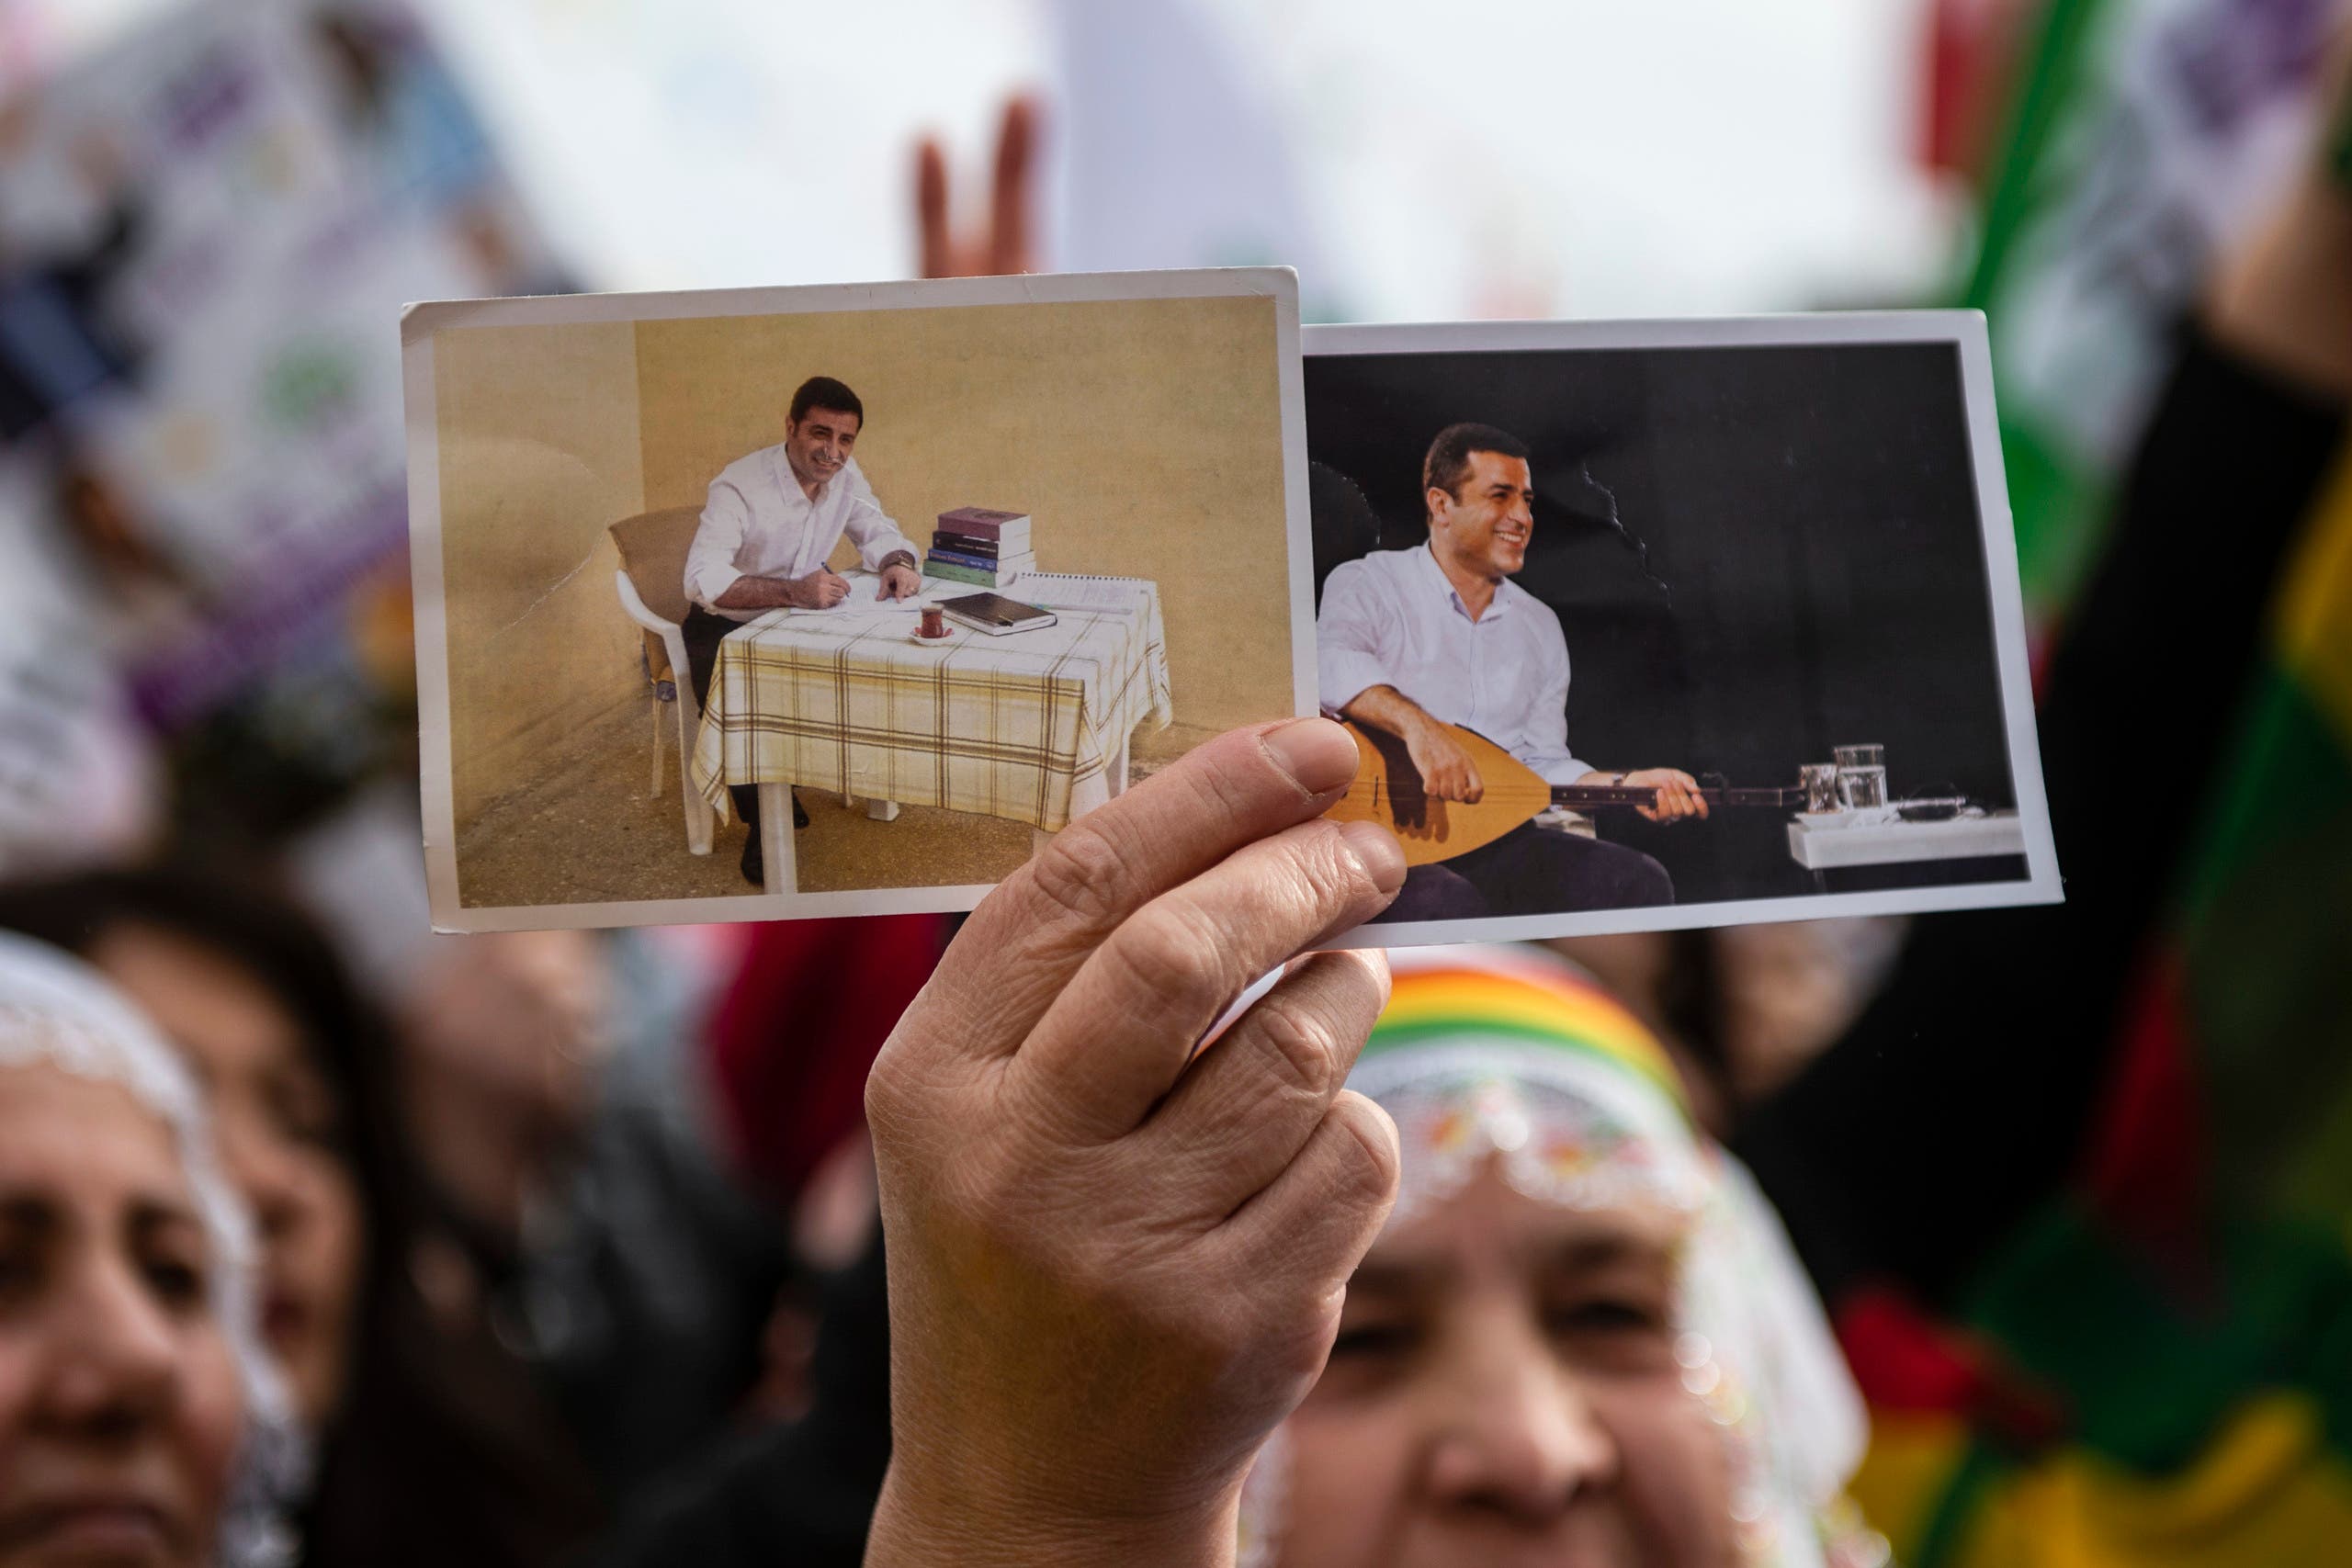 أحد مناصري حزب الشعوب الديمقراطي يحمل صورة دميرتاش أثناء حضوره تجمعاً لـ"السلام والعدالة" باسطنبول في 3 فبراير 2019